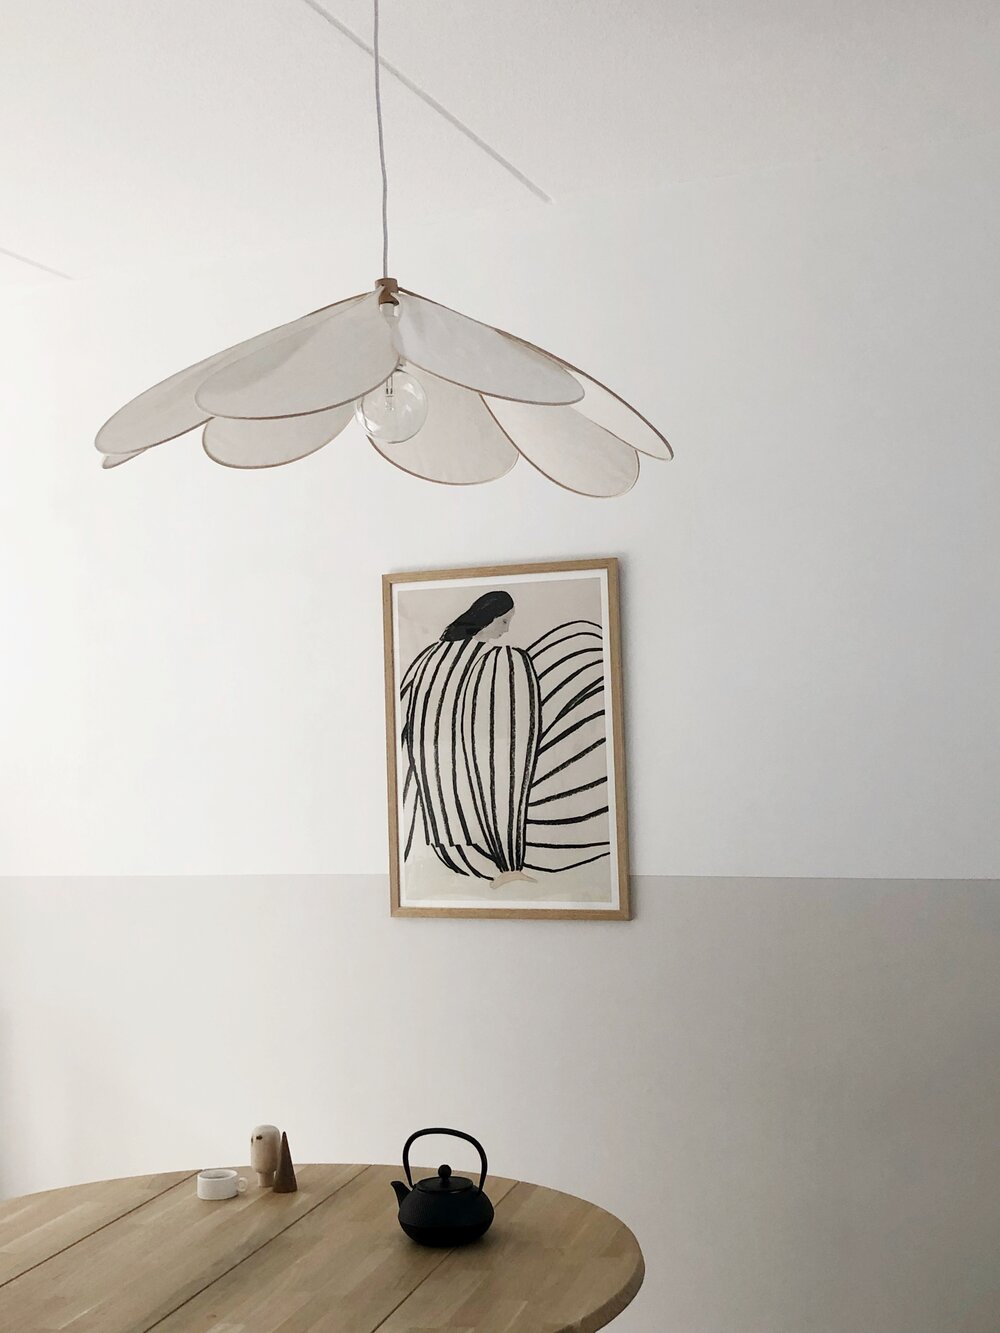 Bloemen lamp maken: €25 een eyecatcher aan het plafond (DIY) sevencouches